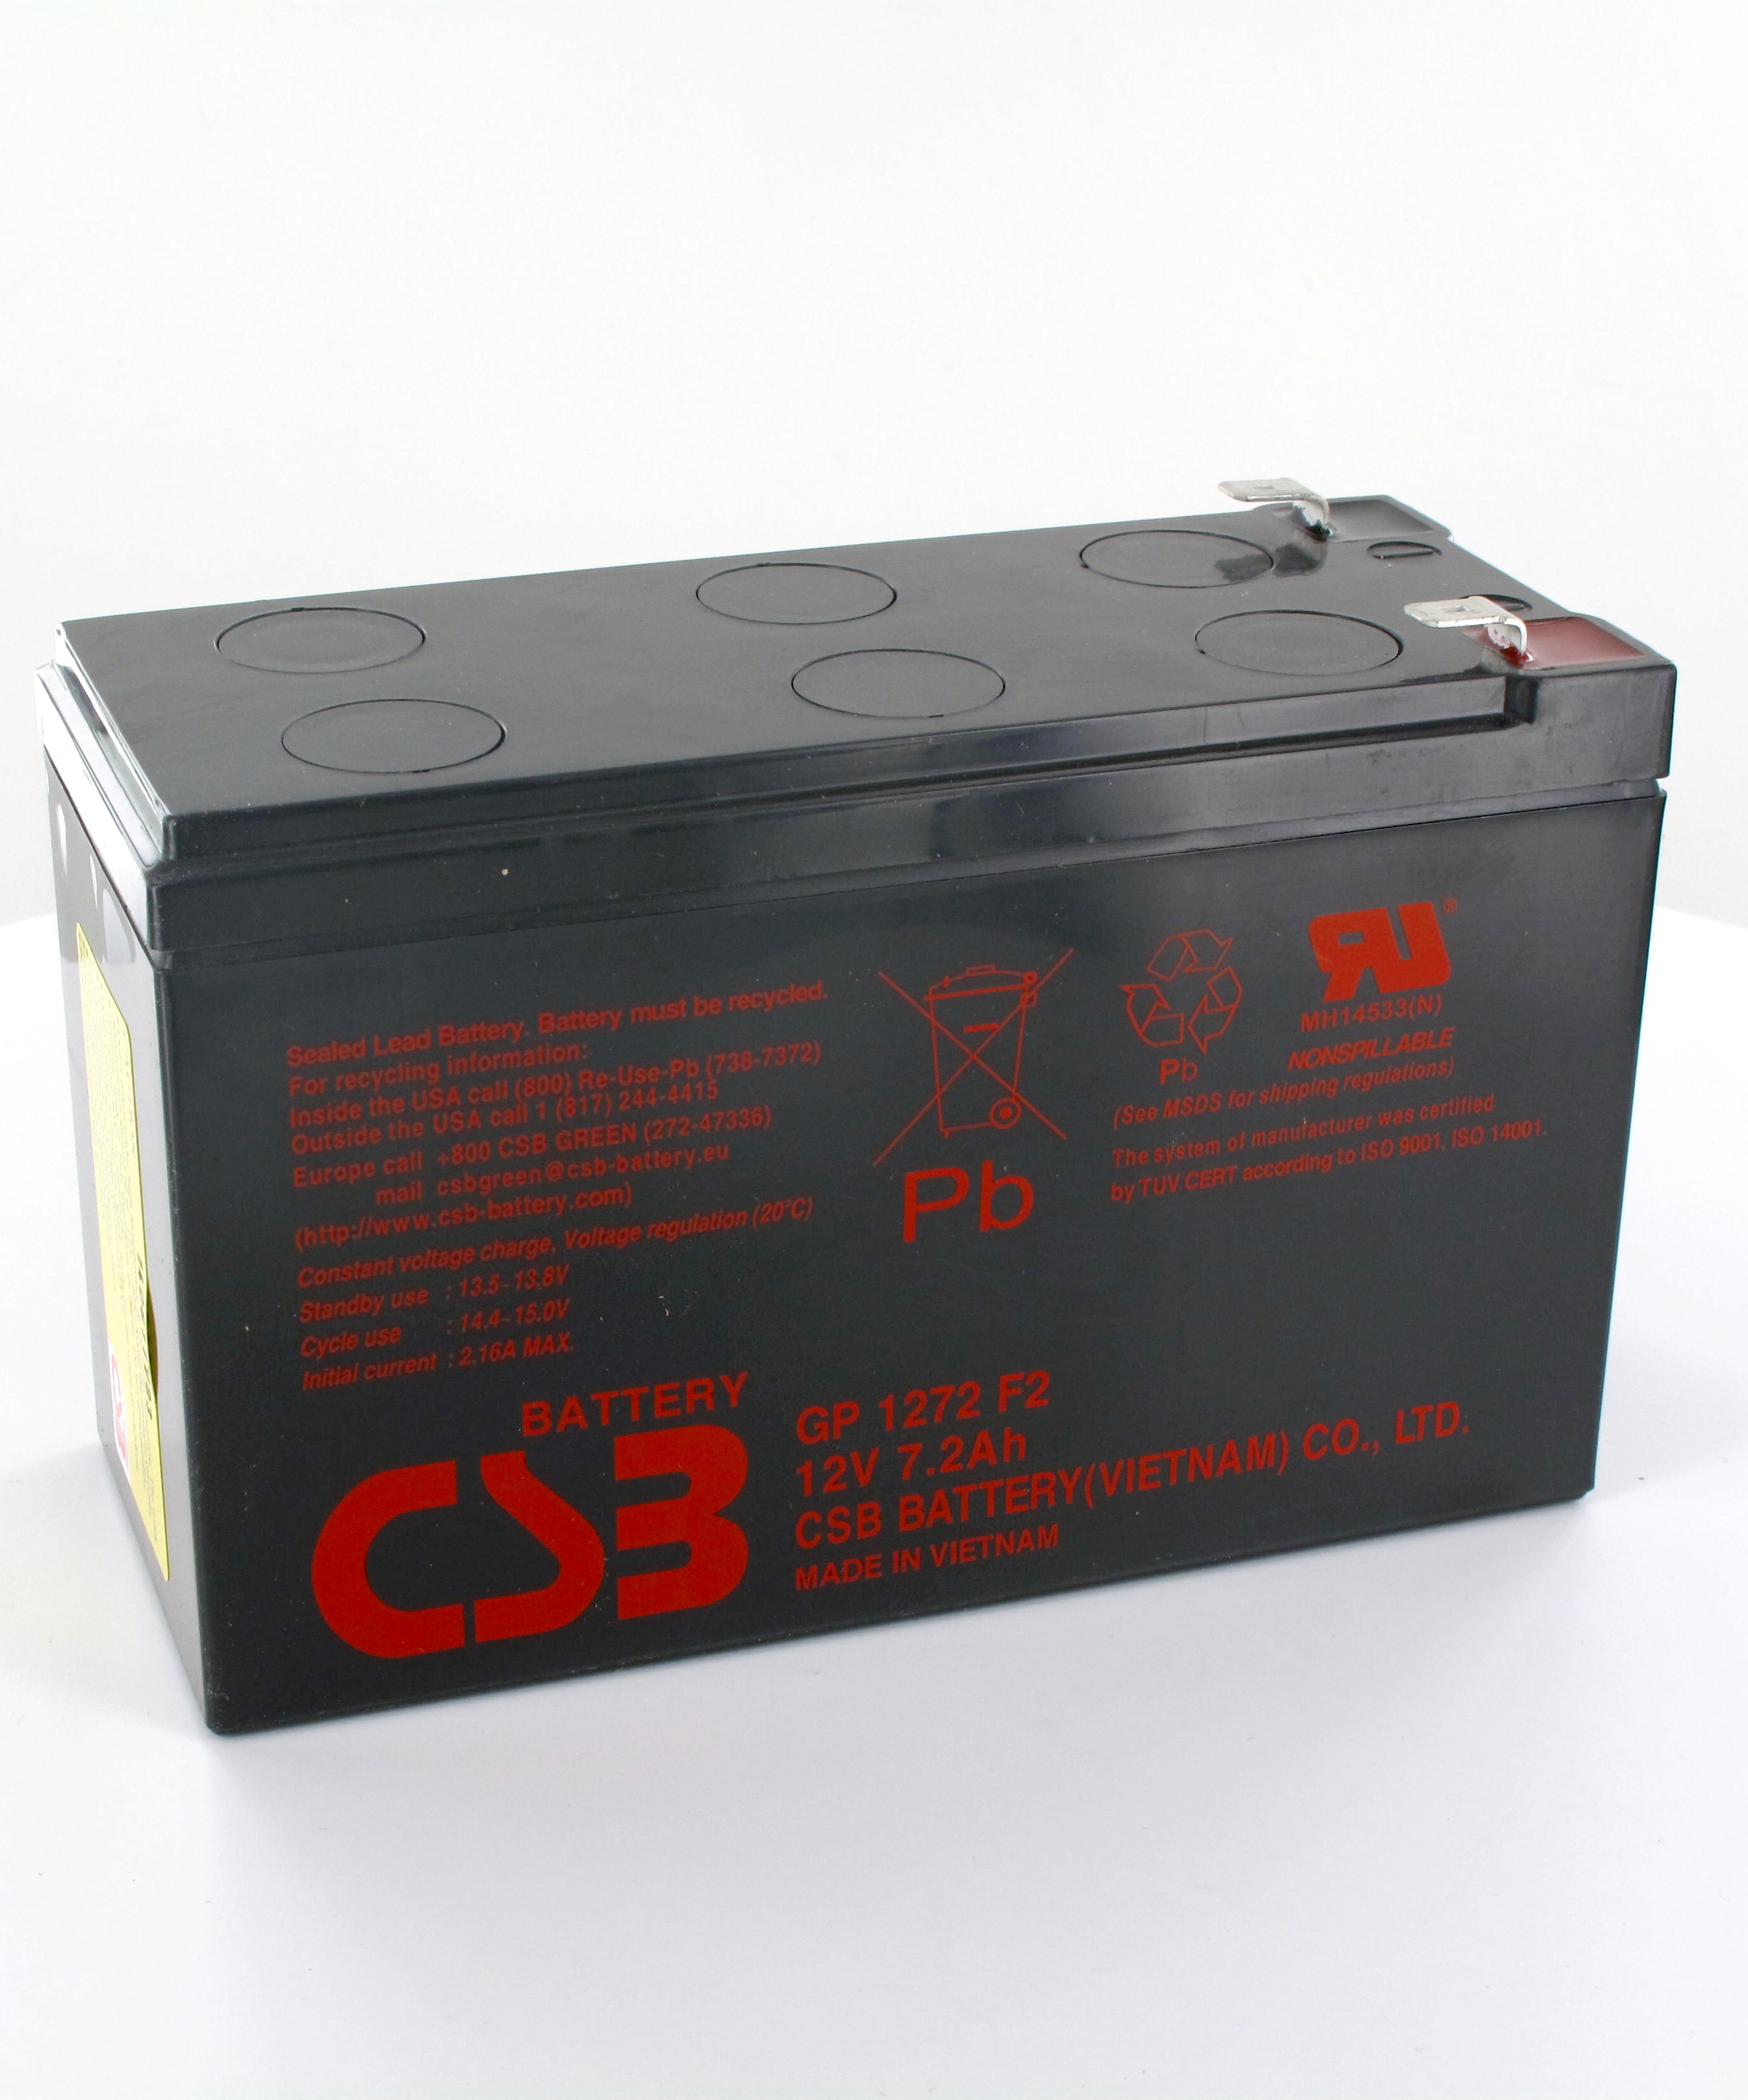 Аккумулятор csb 12v. Аккумулятор CSB GP 1272. CSB GP 1272 f2. Аккумулятор CSB gp1272 f2 12v. Аккумуляторная батарея CSB gp1272 f2.